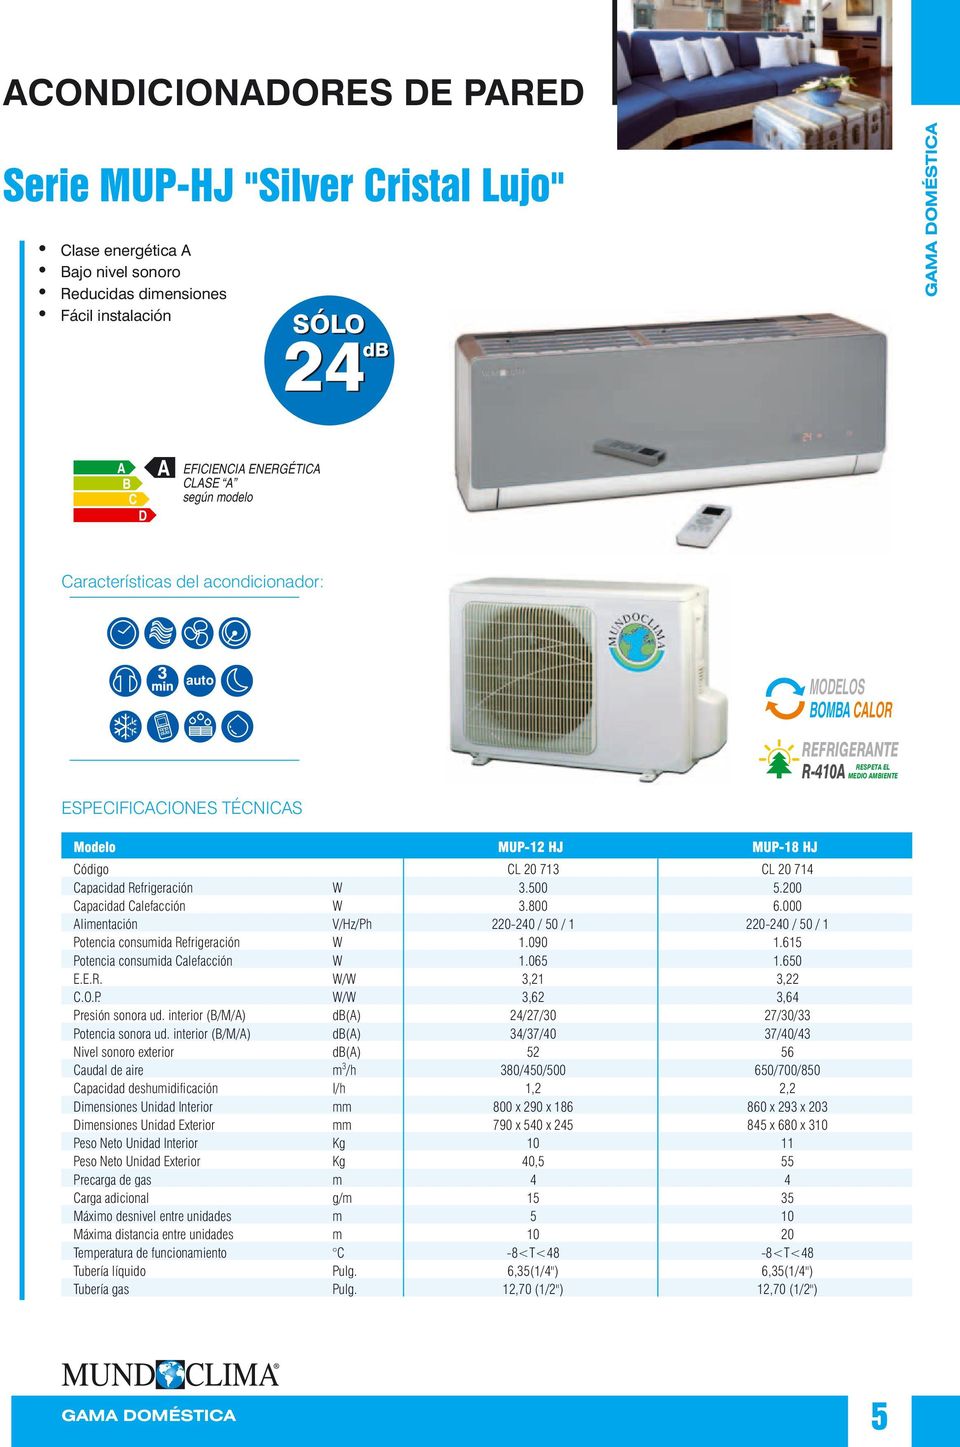 00 Capacidad Calefacción W 3.800 6.000 limentación V/Hz/Ph 0-40 / 50 / 1 0-40 / 50 / 1 Potencia consumida Refrigeración W 1.090 1.615 Potencia consumida Calefacción W 1.065 1.650 E.E.R. W/W 3,1 3, C.